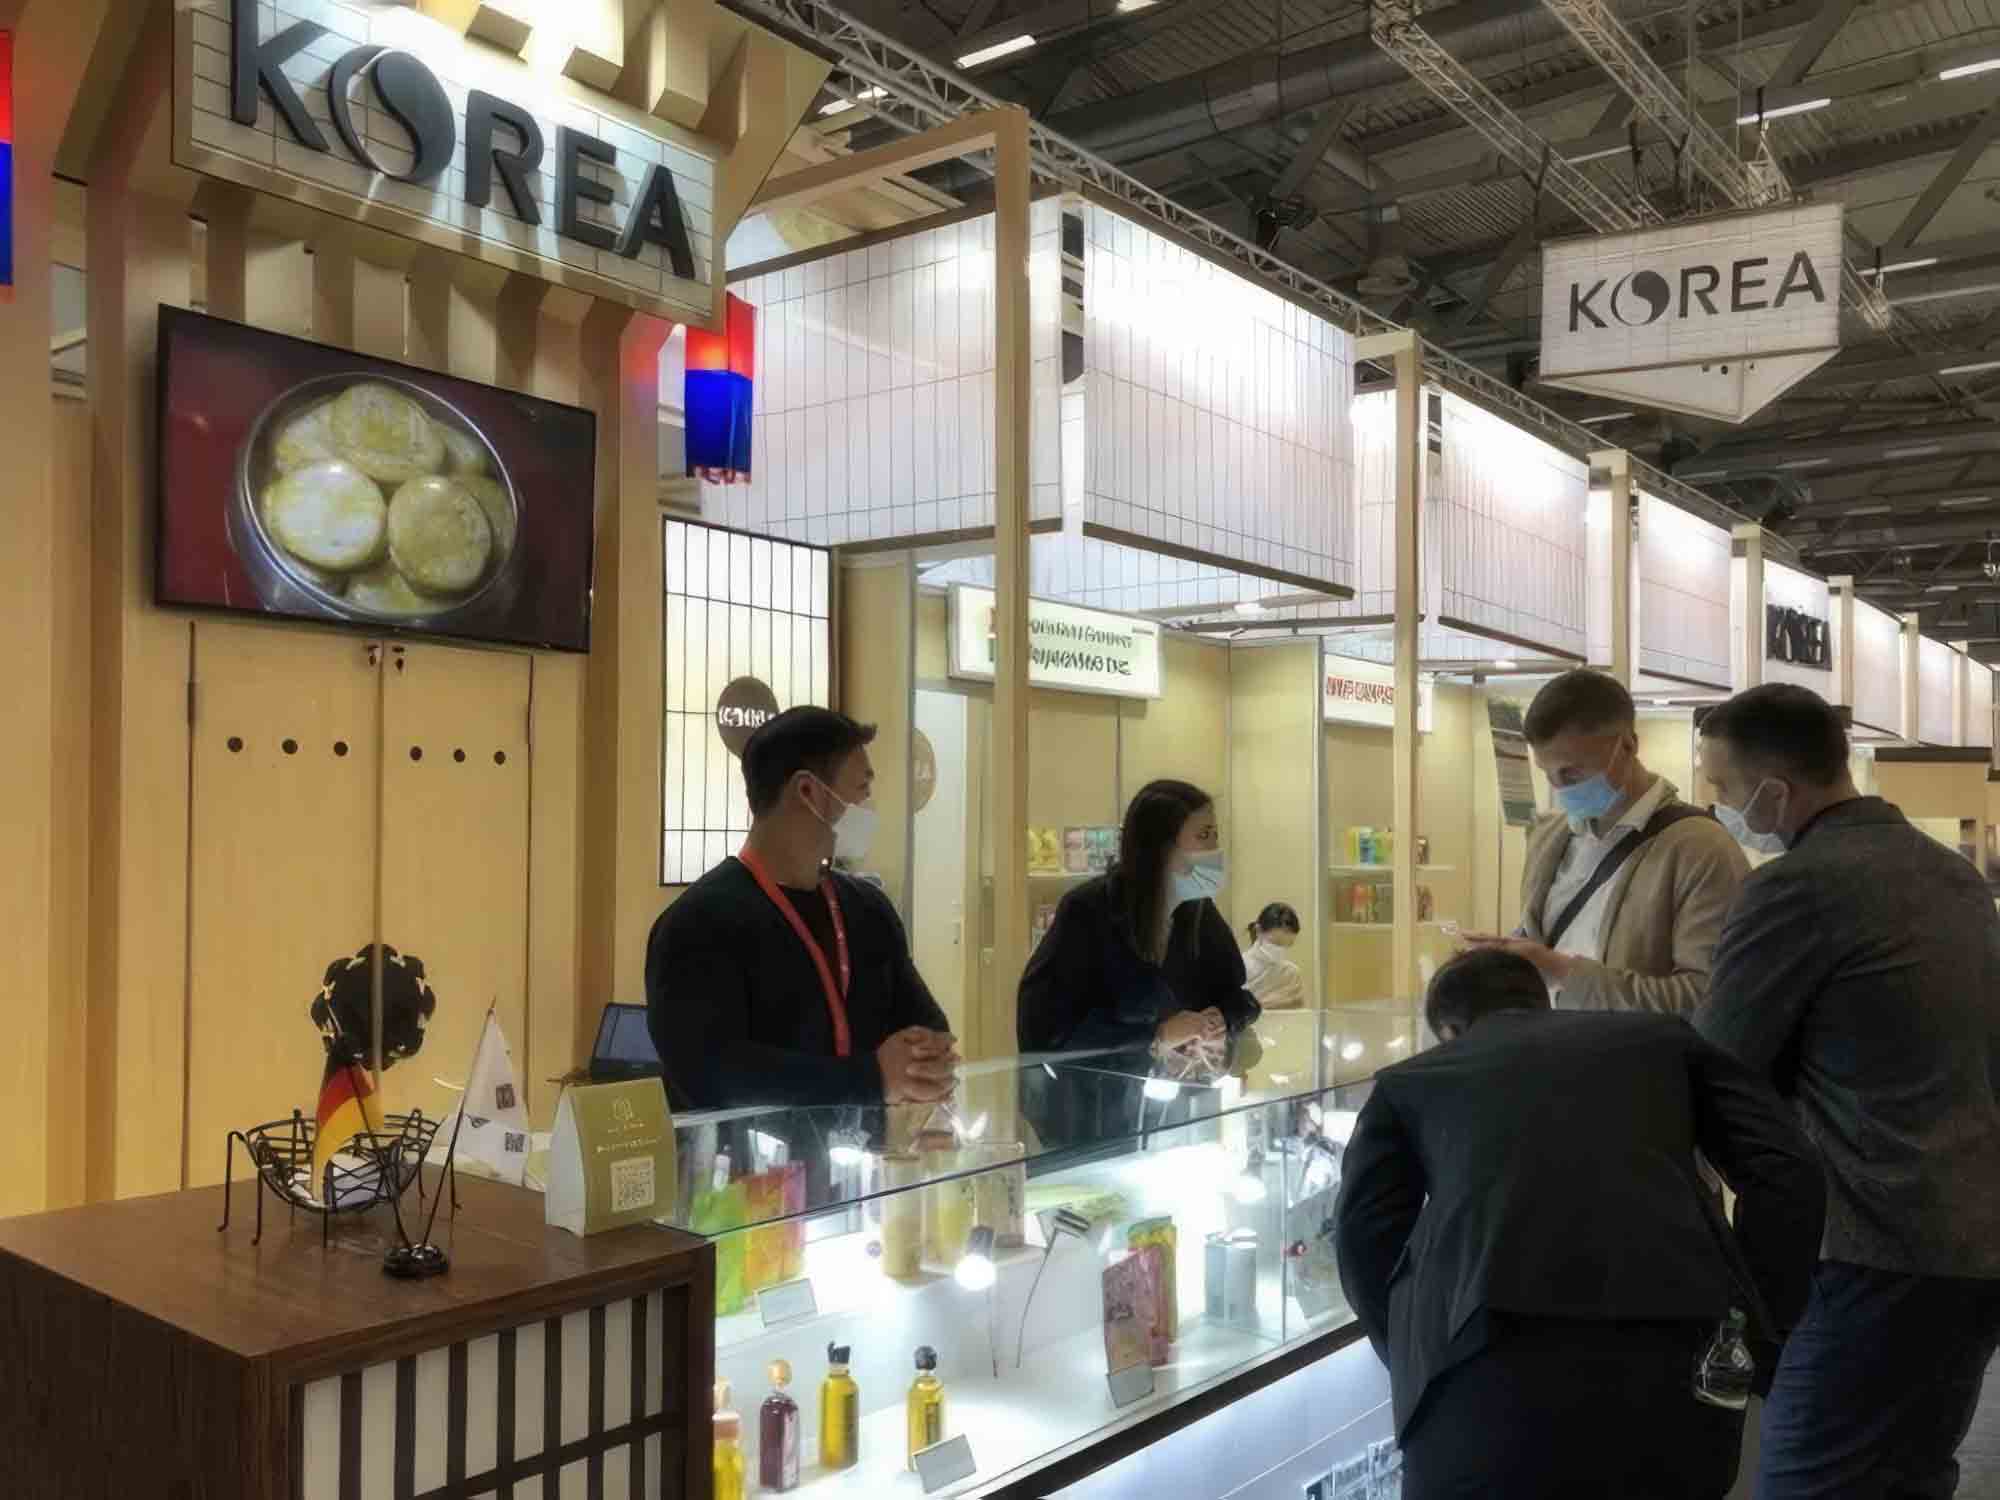 Der koreanische Pavillon präsentiert auf der führenden Lebensmittelmesse neue koreanische Produkte